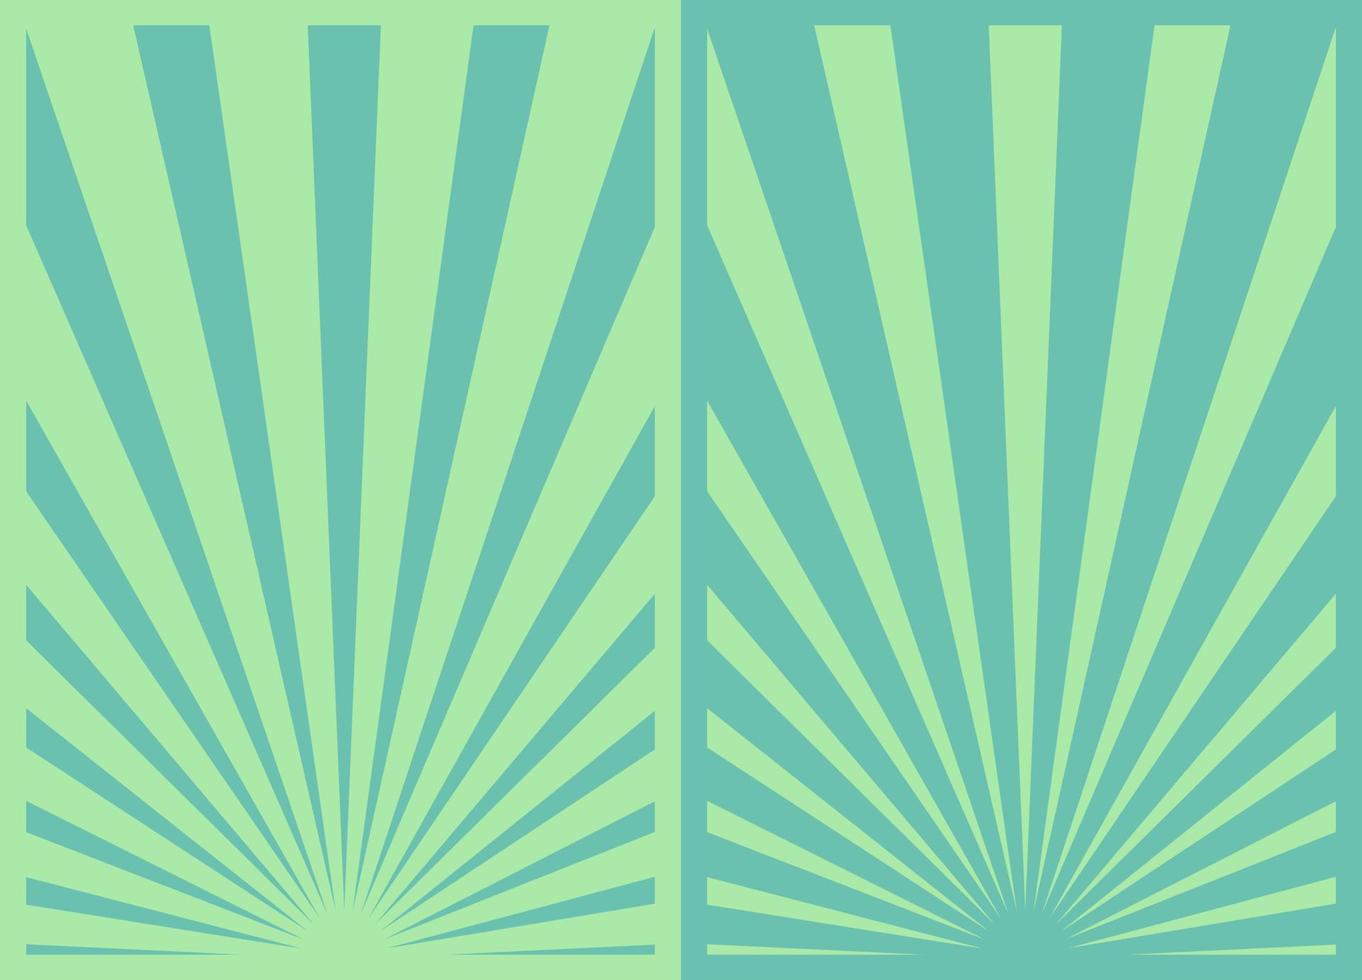 conjunto de pôsteres verticais inspirados em retrô verde limão, diferentes modelos de fundo de arte moderna diy promo sunburst. vetor